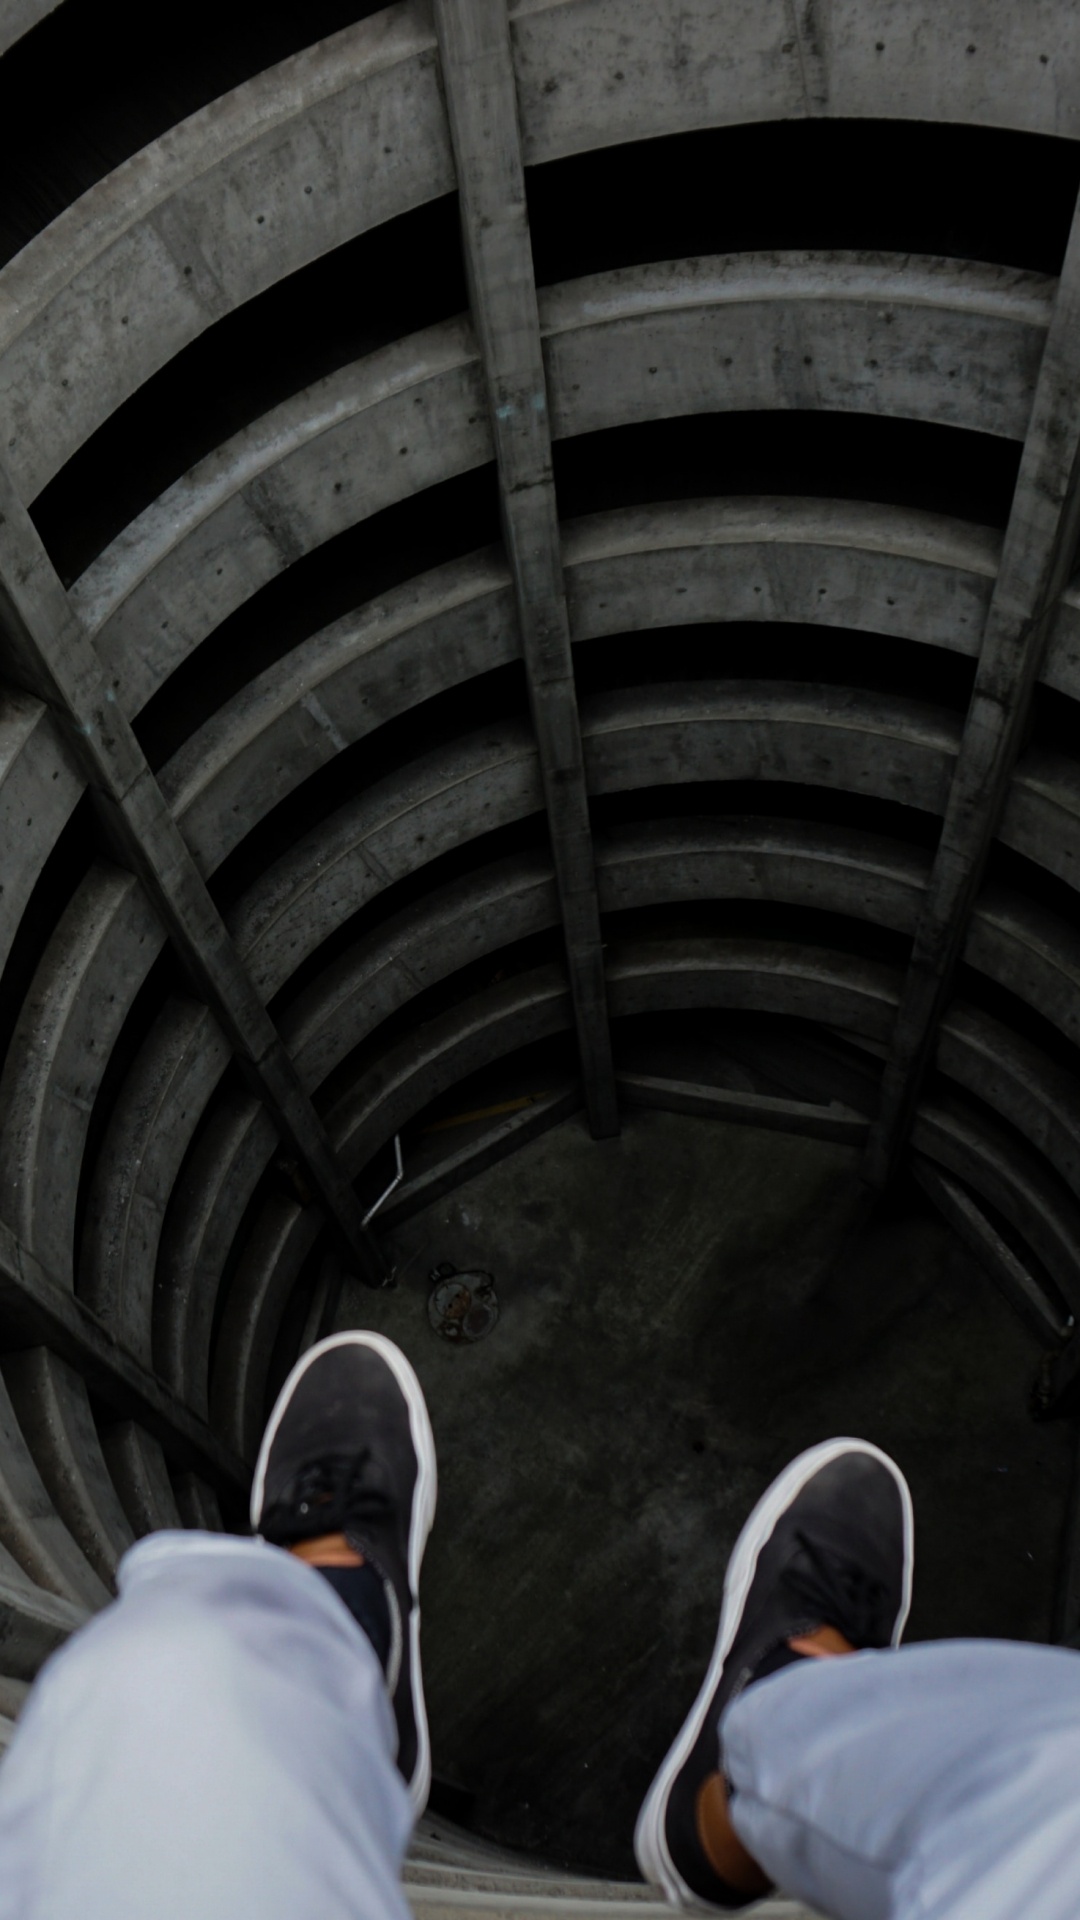 Personne en Jean Bleu et Chaussures Noires Assis Sur Tunnel. Wallpaper in 1080x1920 Resolution